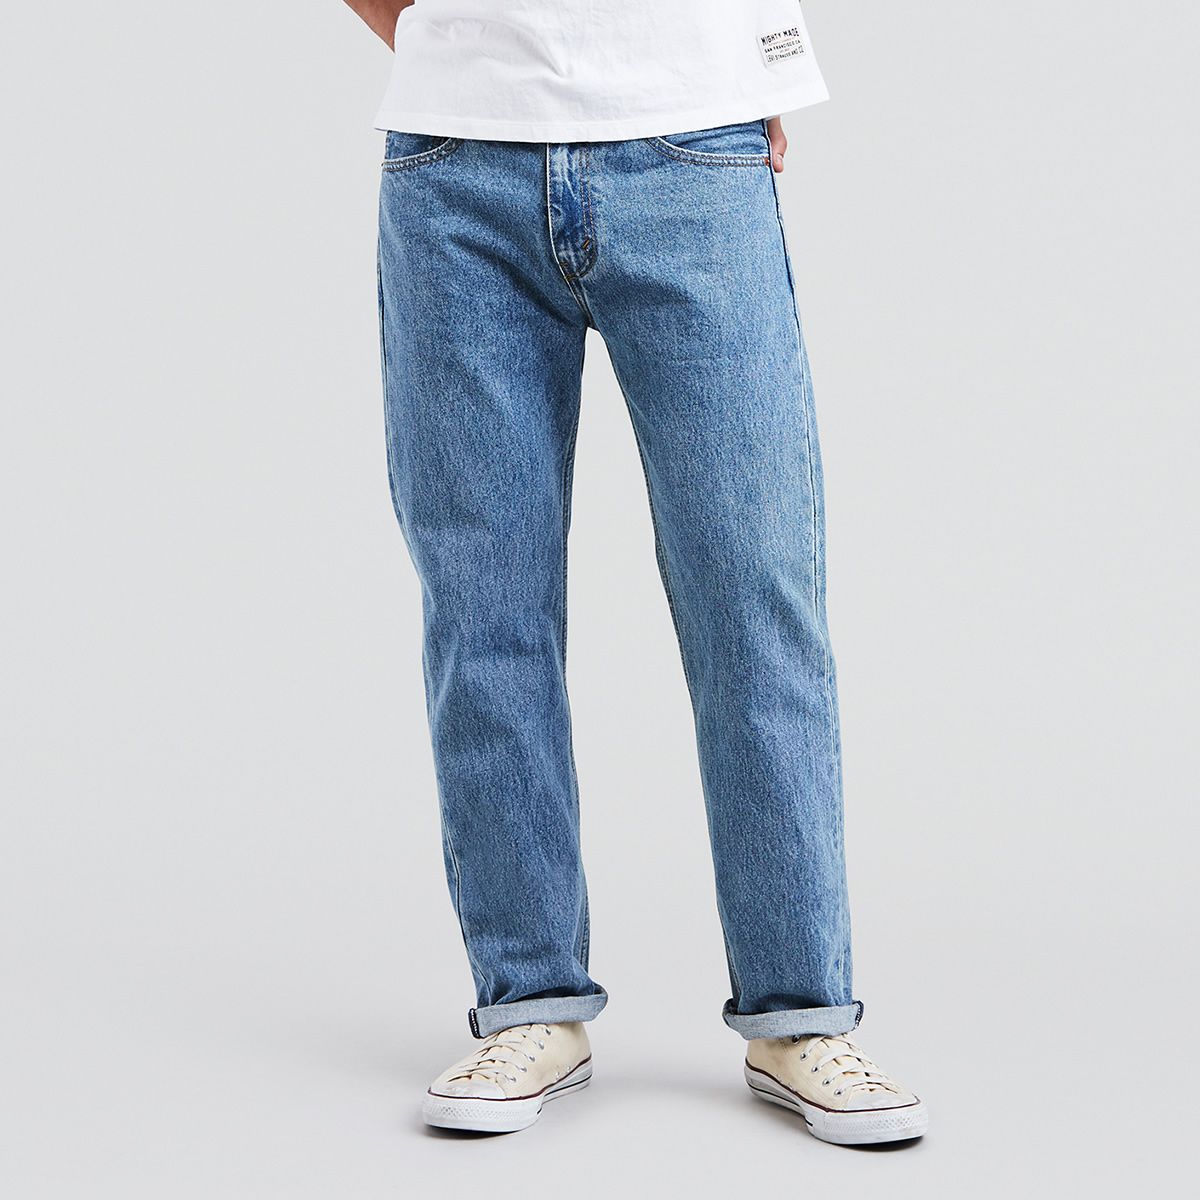 Colored Levis Jeans For Men Macys 